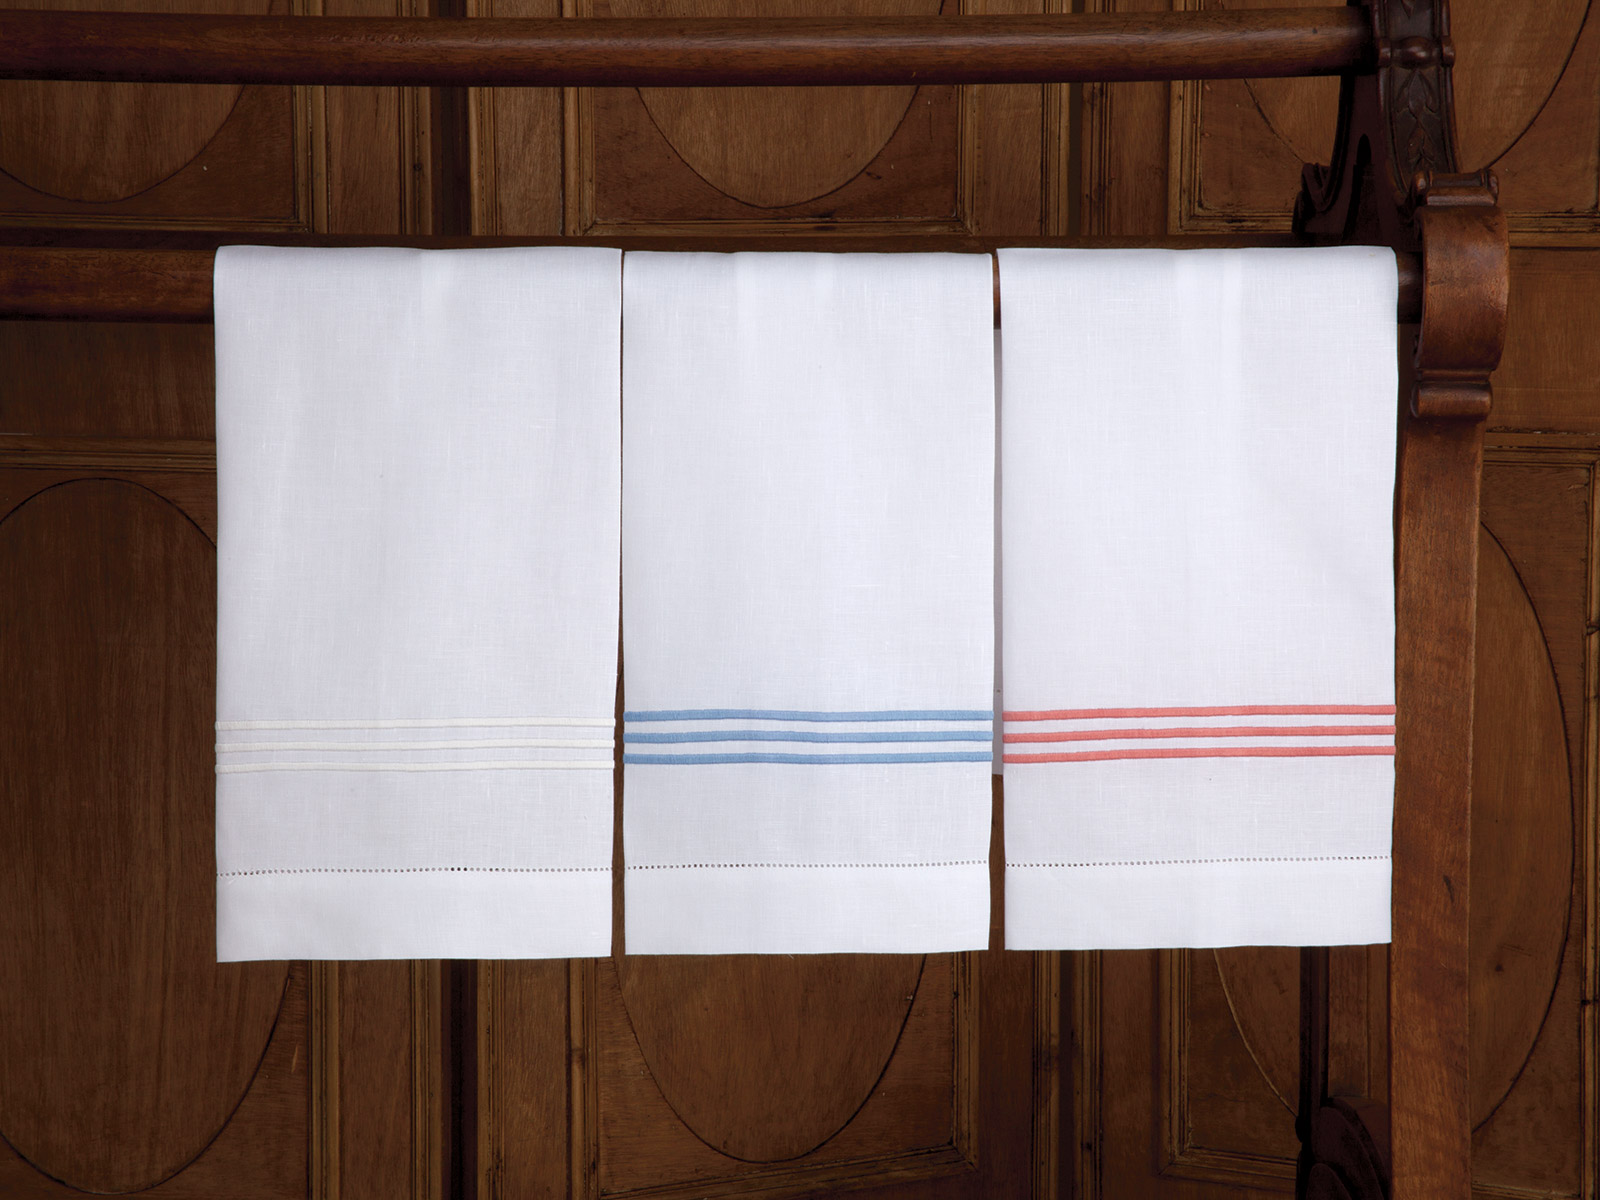 Hampton Court Guest Towels: Beige, Gray, & Navy